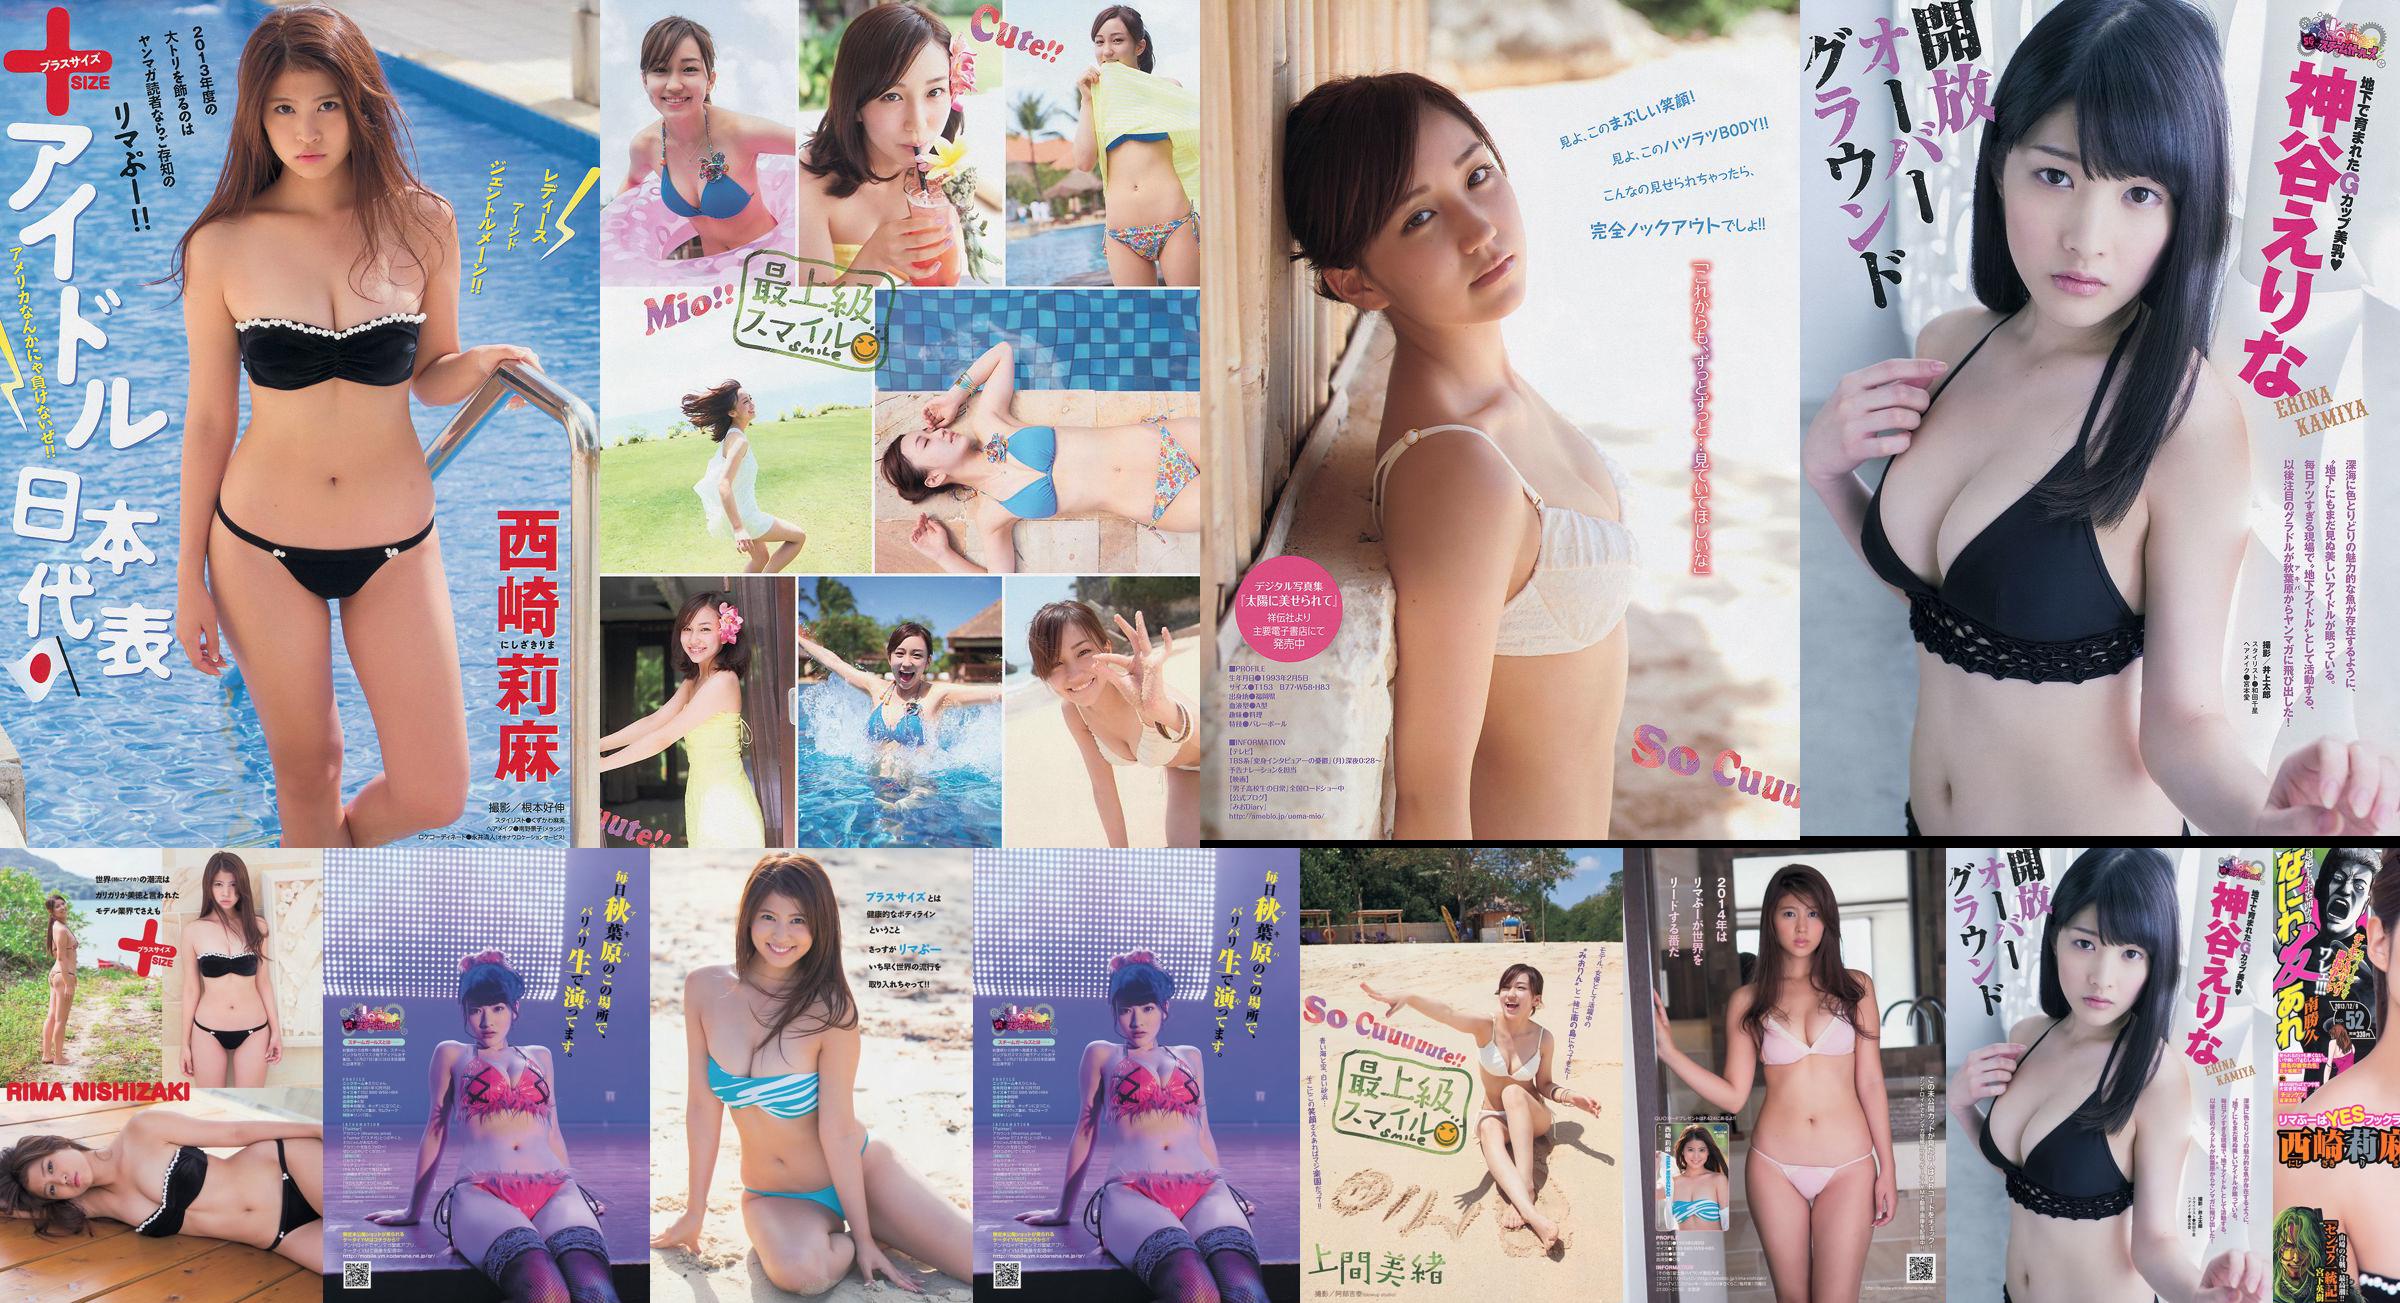 [Majalah Muda] Rima Nishizaki Mio Uema Erina Kamiya 2013 No.52 Foto Moshi No.54ce43 Halaman 1